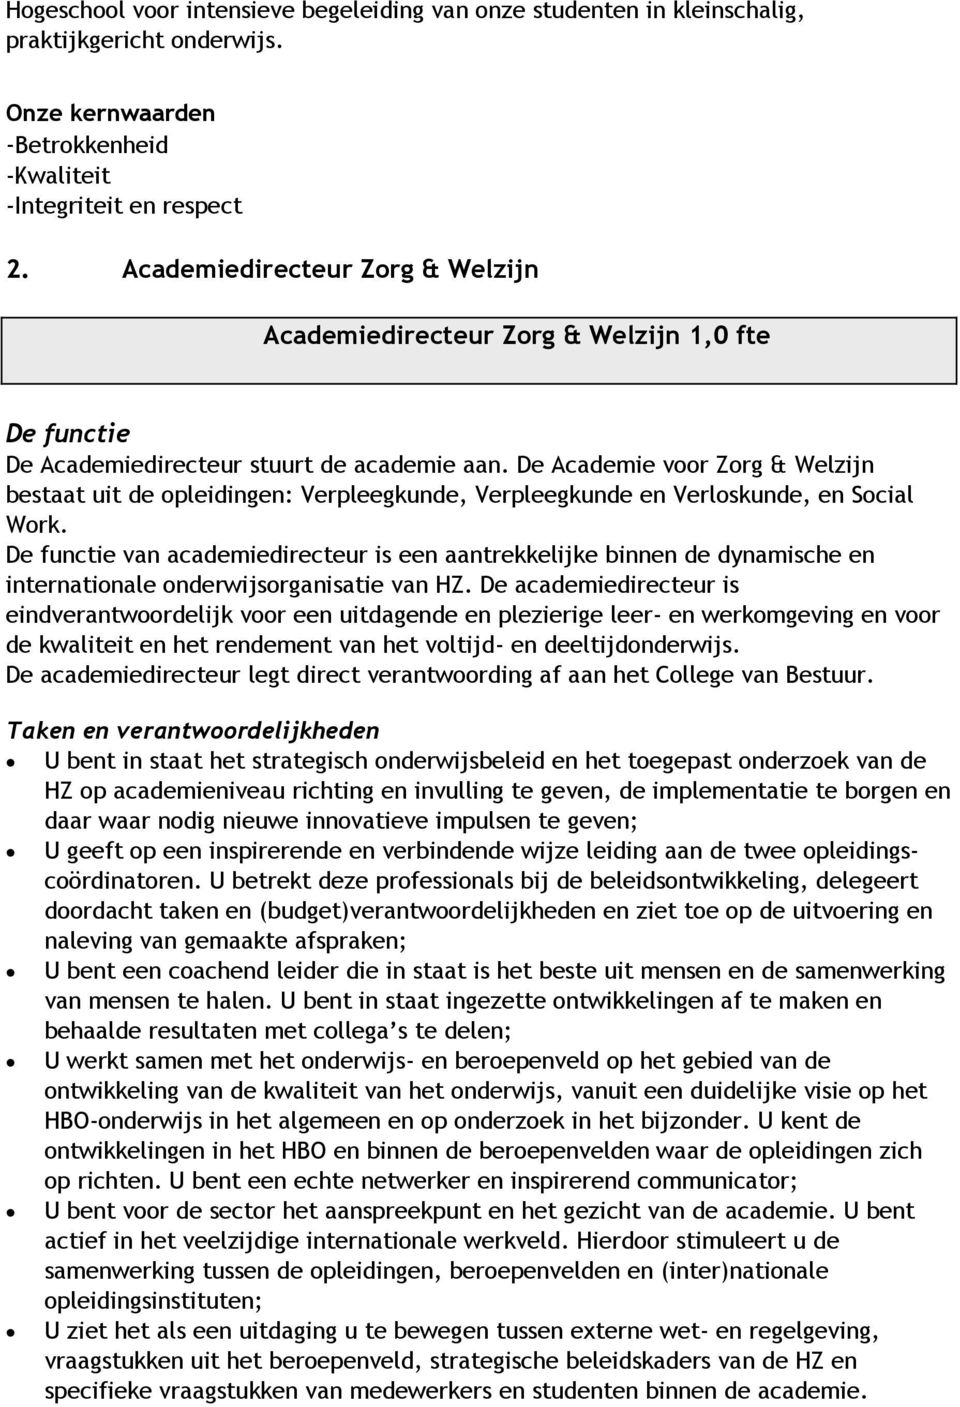 De Academie voor Zorg & Welzijn bestaat uit de opleidingen: Verpleegkunde, Verpleegkunde en Verloskunde, en Social Work.